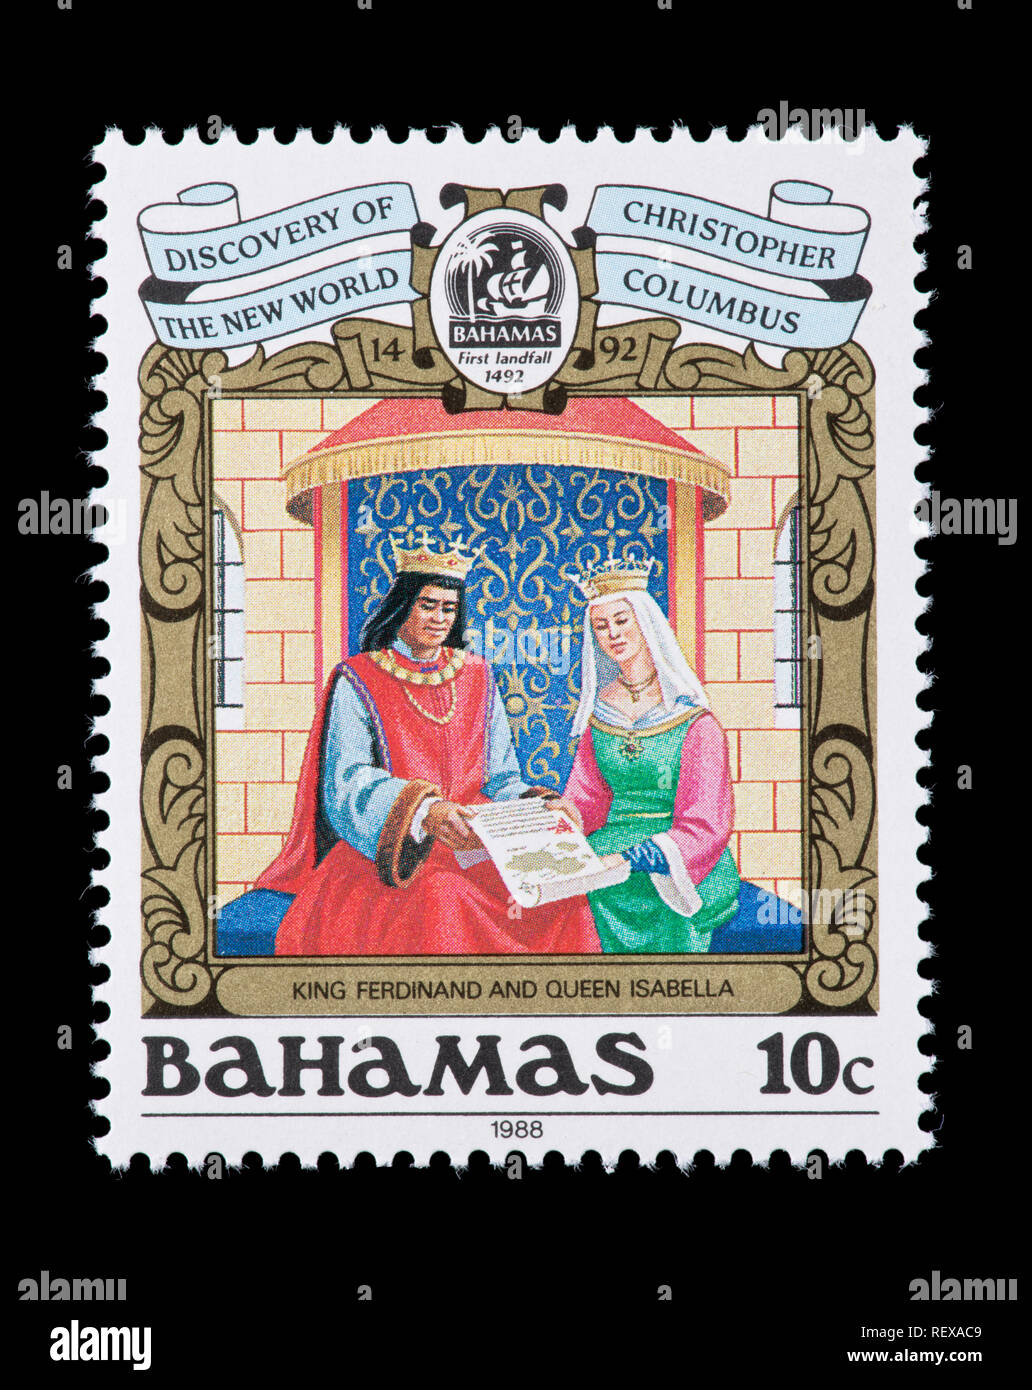 Sello de Bahamas representando el rey Fernando y la Reina Isabel, el quinto centenario del descubrimiento de América Foto de stock